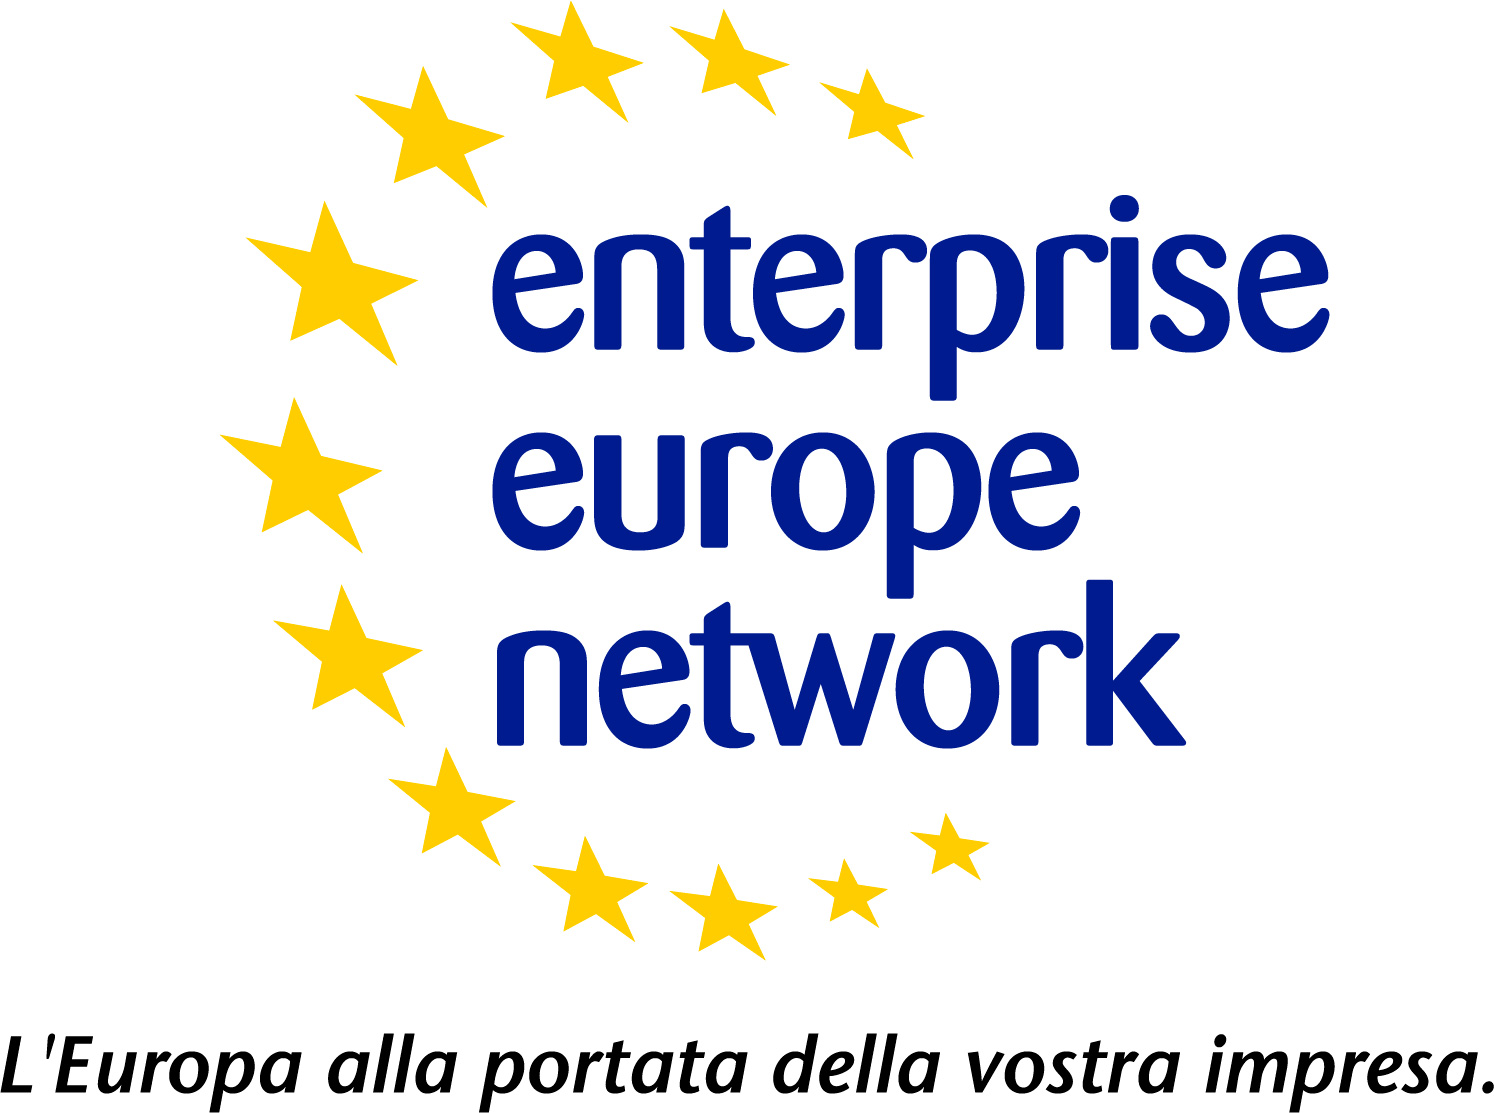 5/11/2010 - Evento nazionale della rete Enterprise Europe Network a Ecomondo